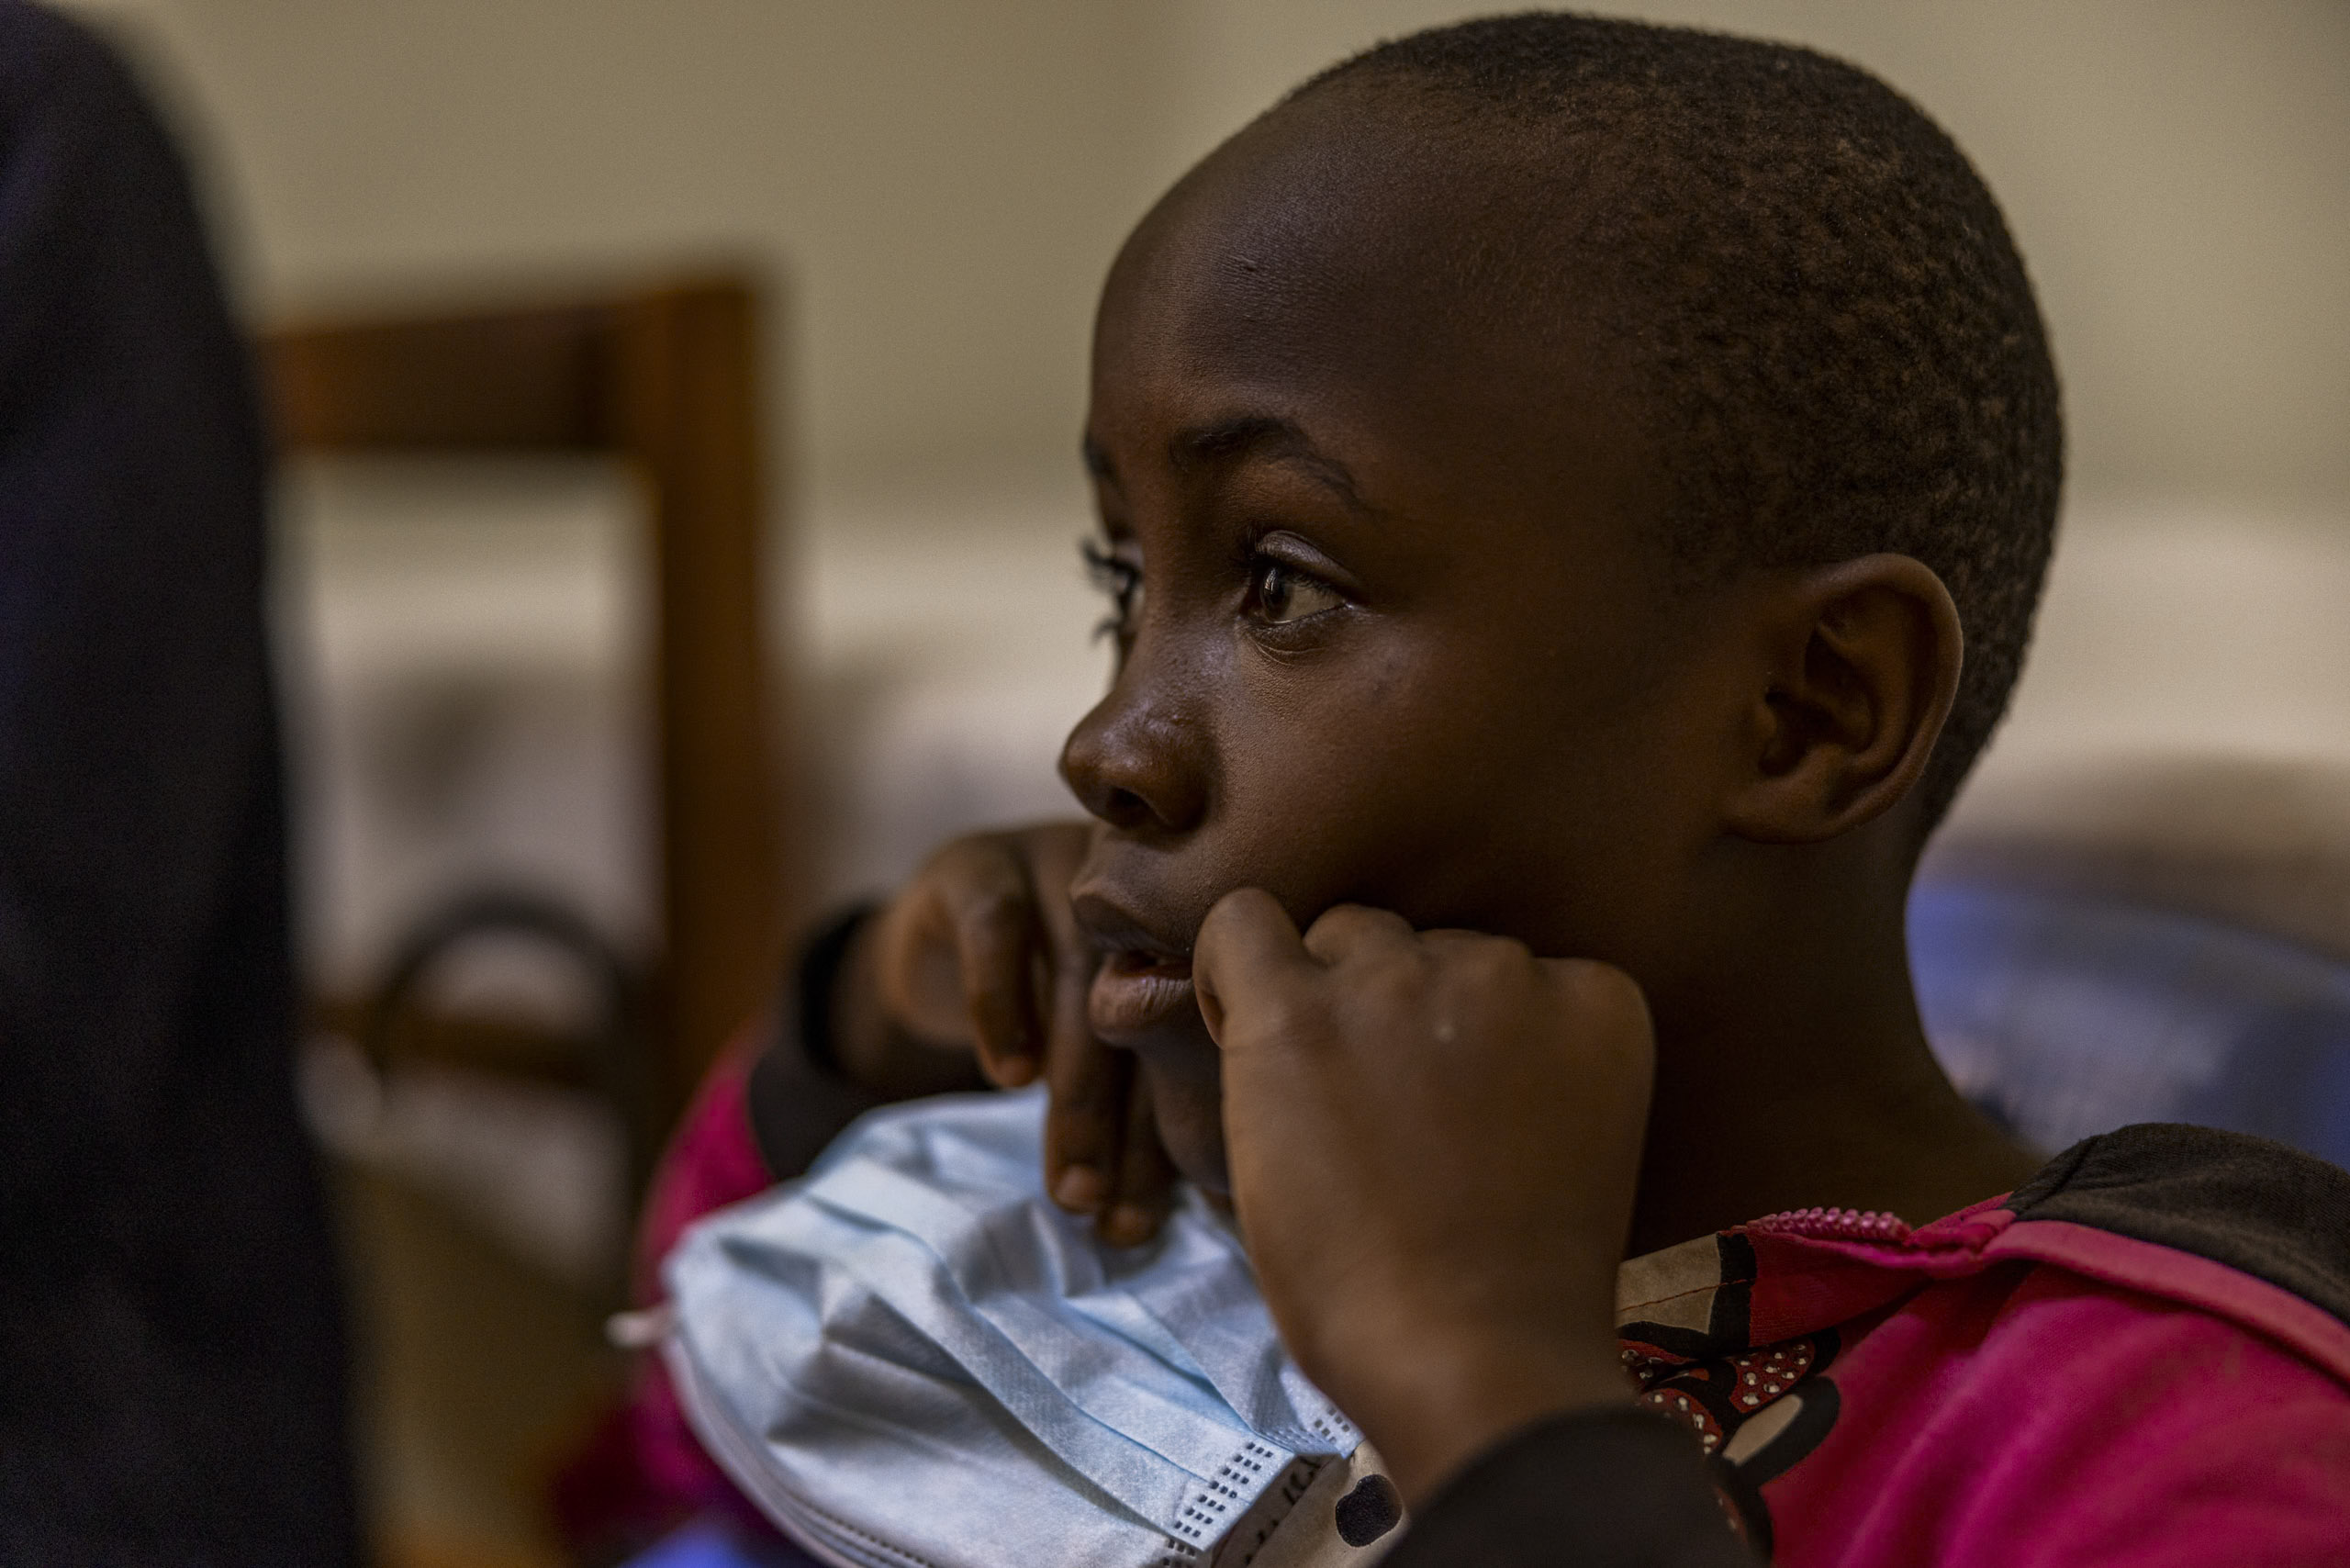 Eine Nahaufnahme eines jungen afrikanischen Kindes, das in einem schwach beleuchteten Innenraum aufmerksam zur Seite blickt, die Hände vor dem Gesicht hält und ein rosa und schwarz gestreiftes Hemd trägt. © Fotografie Tomas Rodriguez